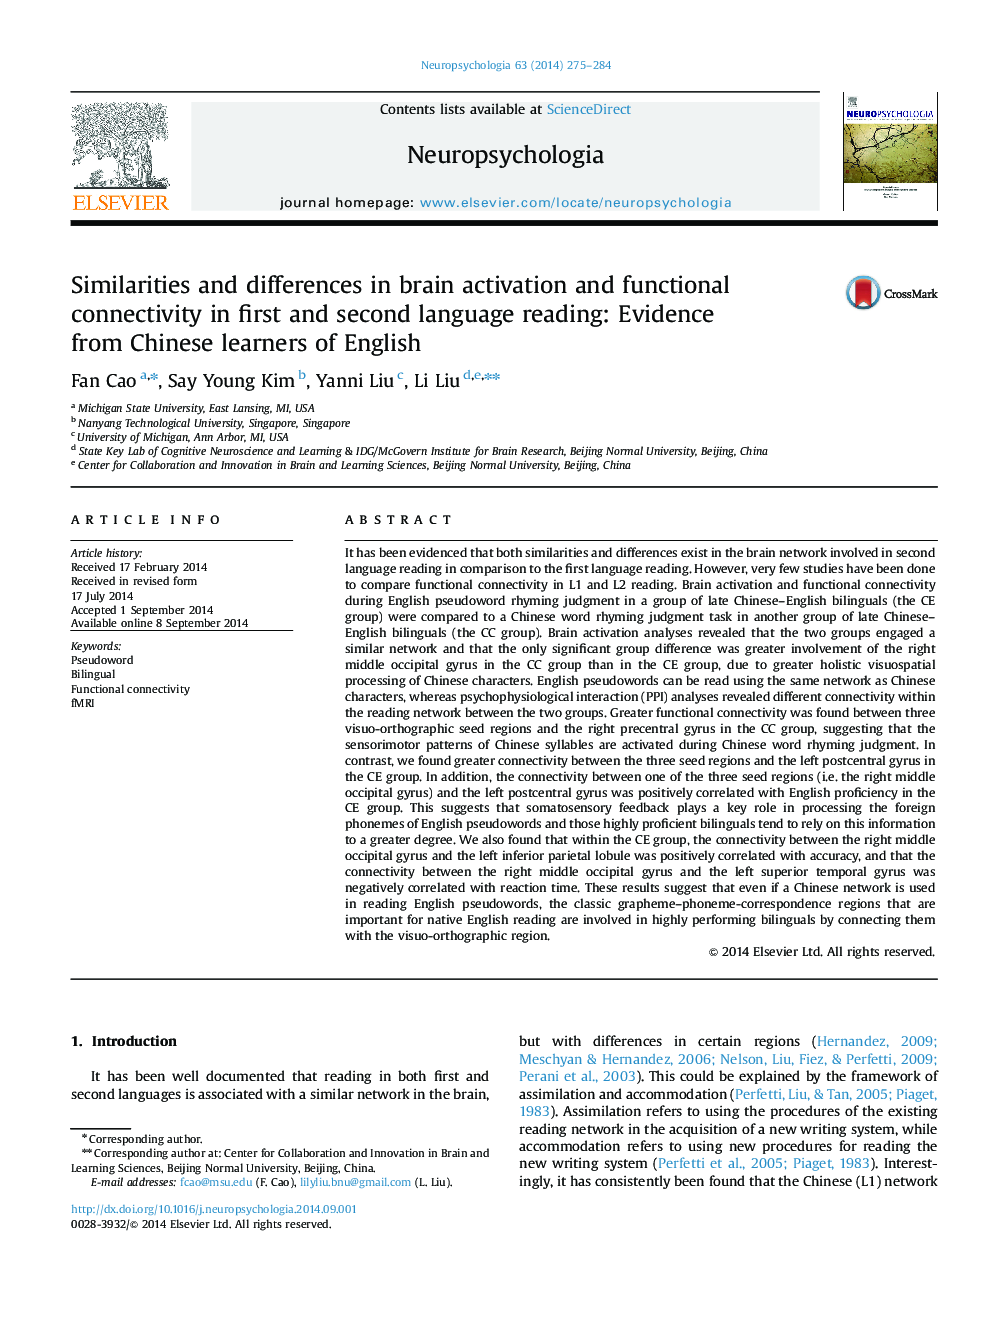 شباهت ها و تفاوت های در فعال سازی مغز و اتصال به عملکرد در خواندن اول و دوم زبان: شواهد از زبان آموزان چینی زبان انگلیسی 